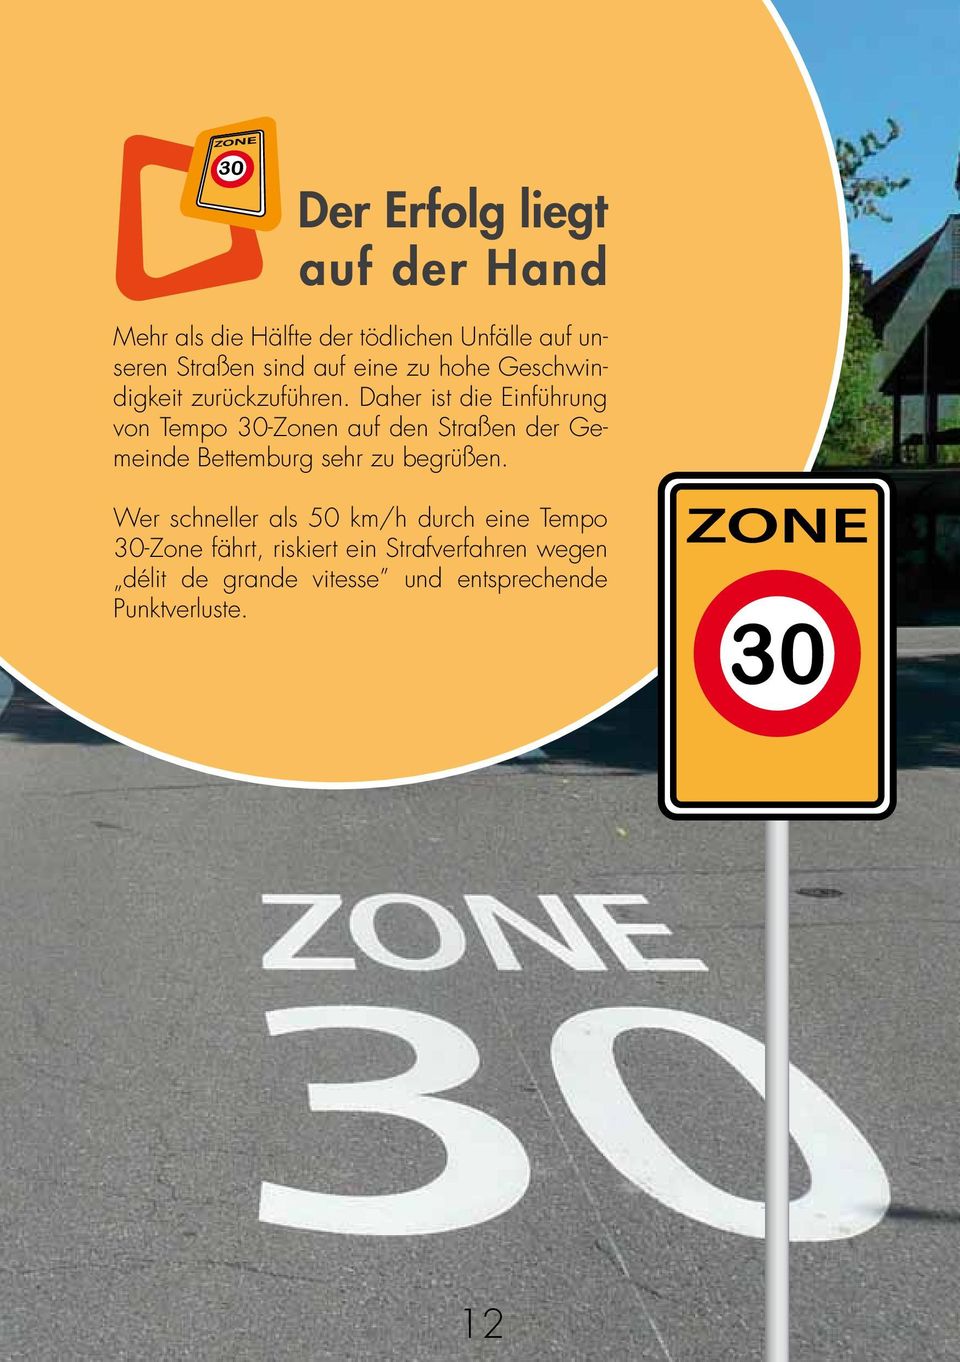 Daher ist die Einführung von Tempo 30-Zonen auf den Straßen der Gemeinde Bettemburg sehr zu